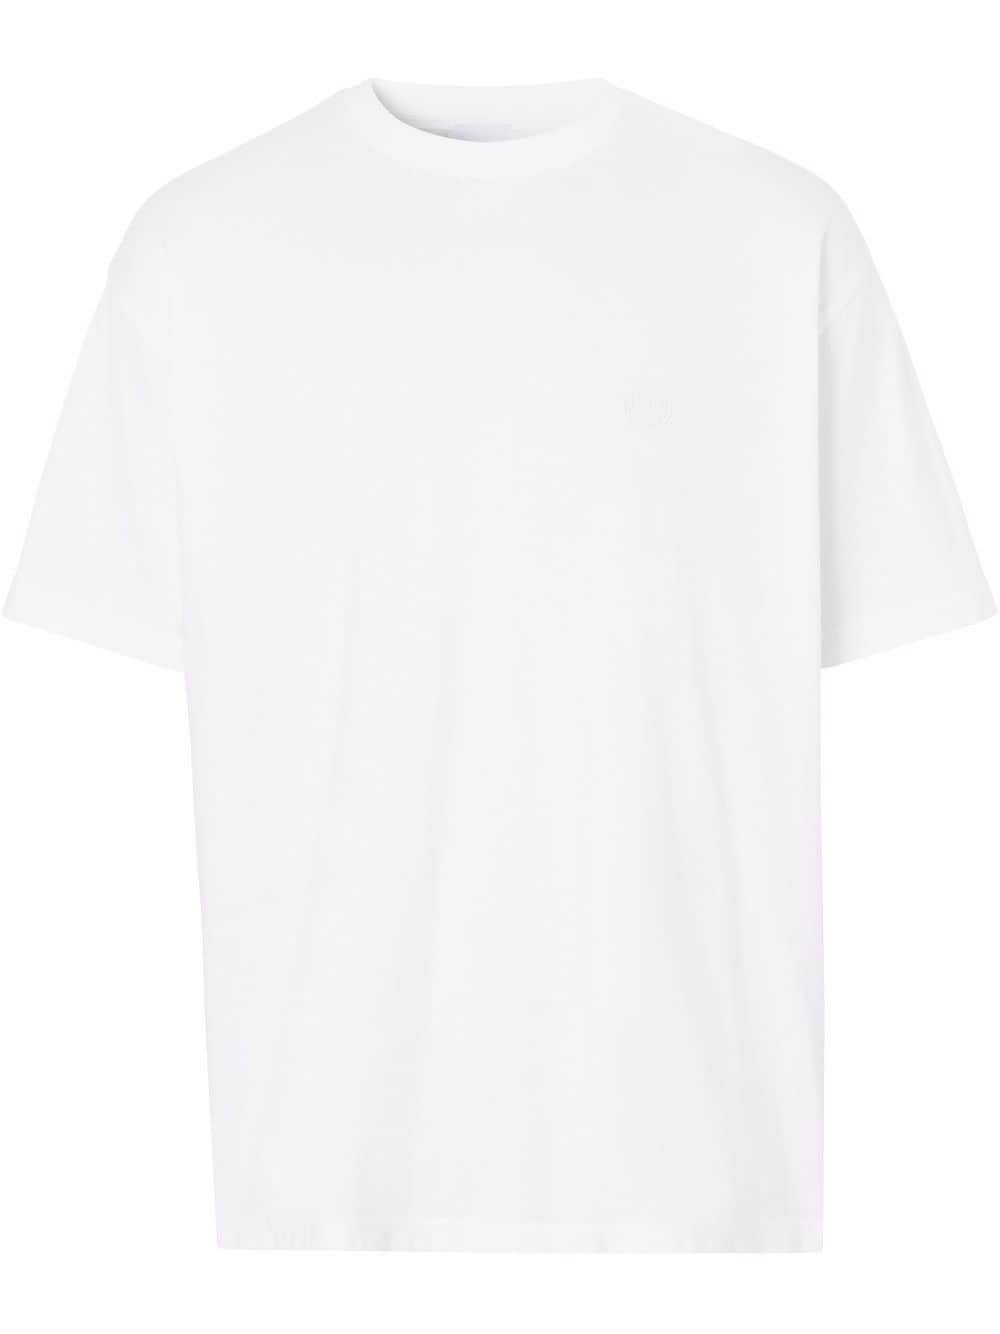 фото Burberry футболка с вышитой монограммой tb